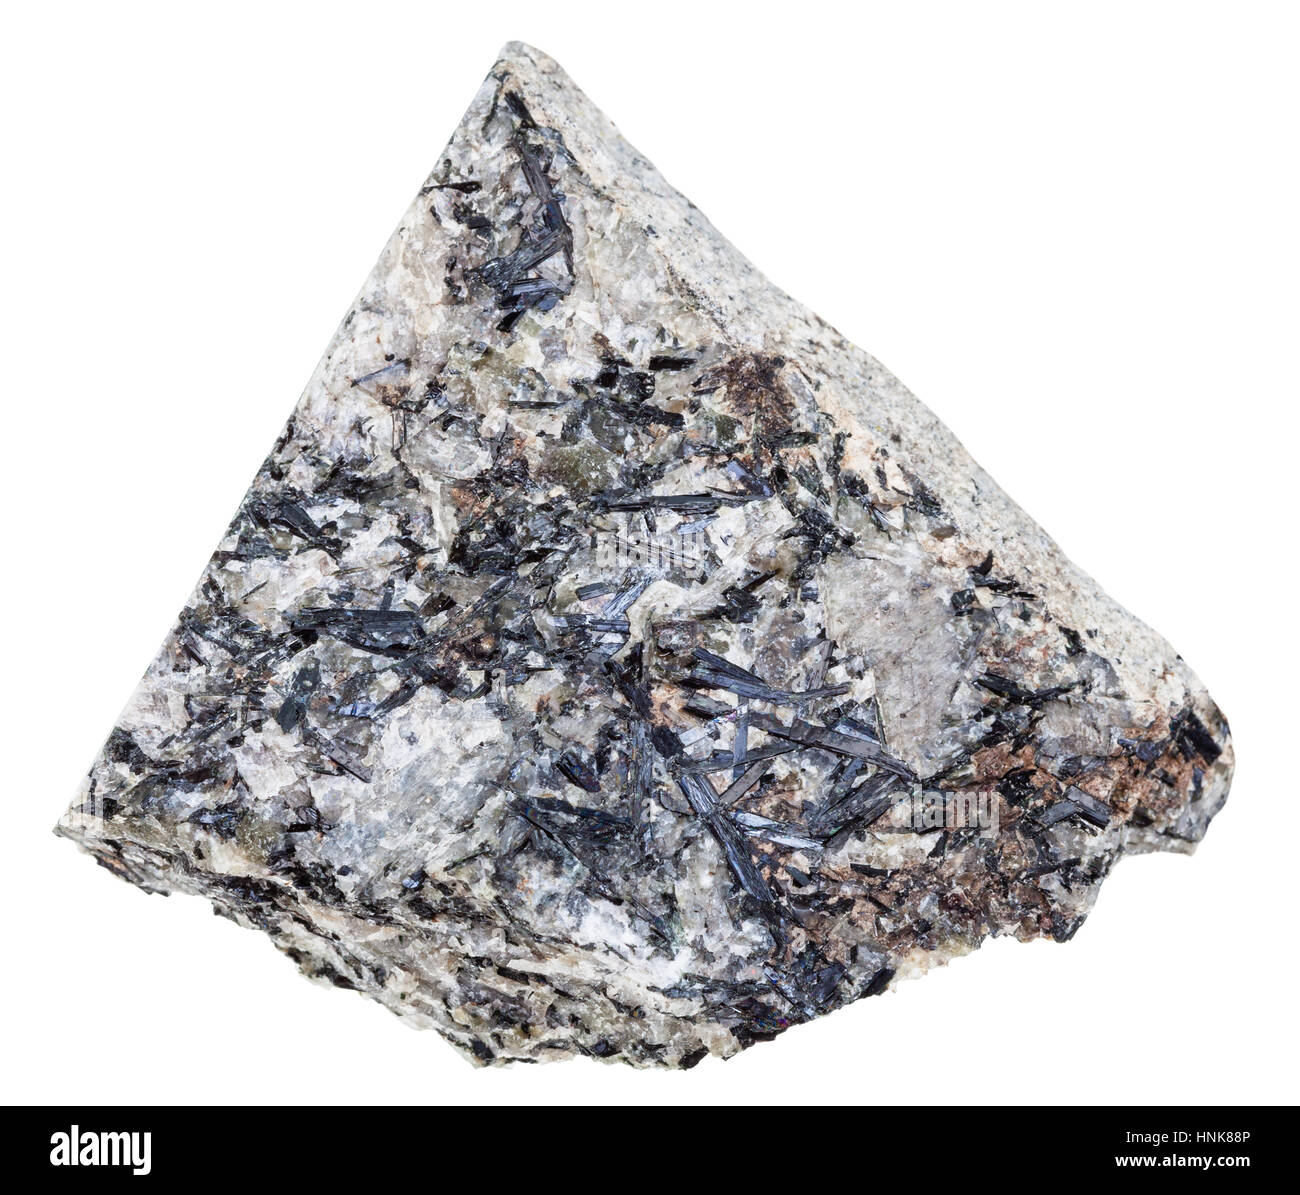 Makro-Aufnahmen der geologischen Sammlung Mineral - Lujaurite (Lujavrite, Nepheline Syenit) Felsblock isoliert auf weißem Hintergrund Stockfoto